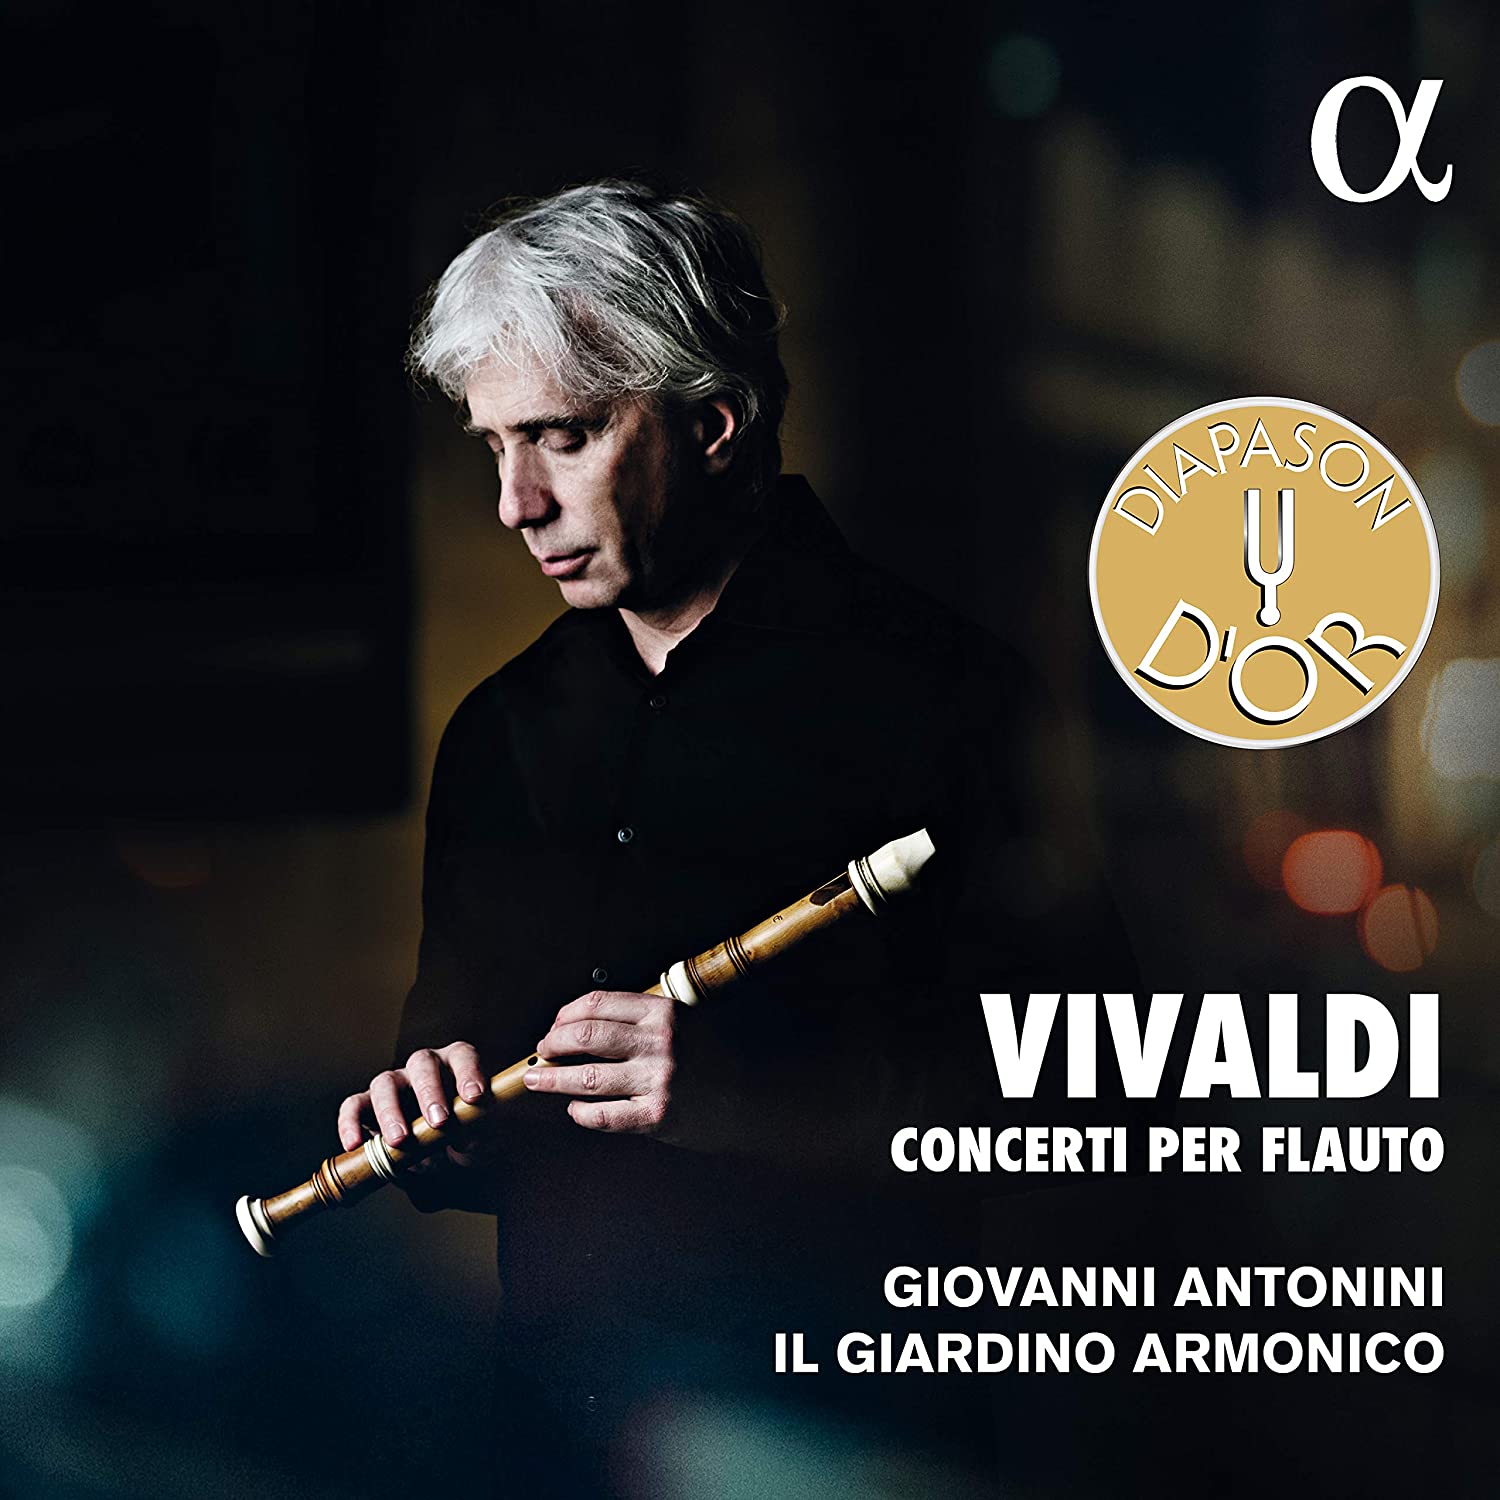 Vivaldi Concerti per flauto - Giovanni Antonini